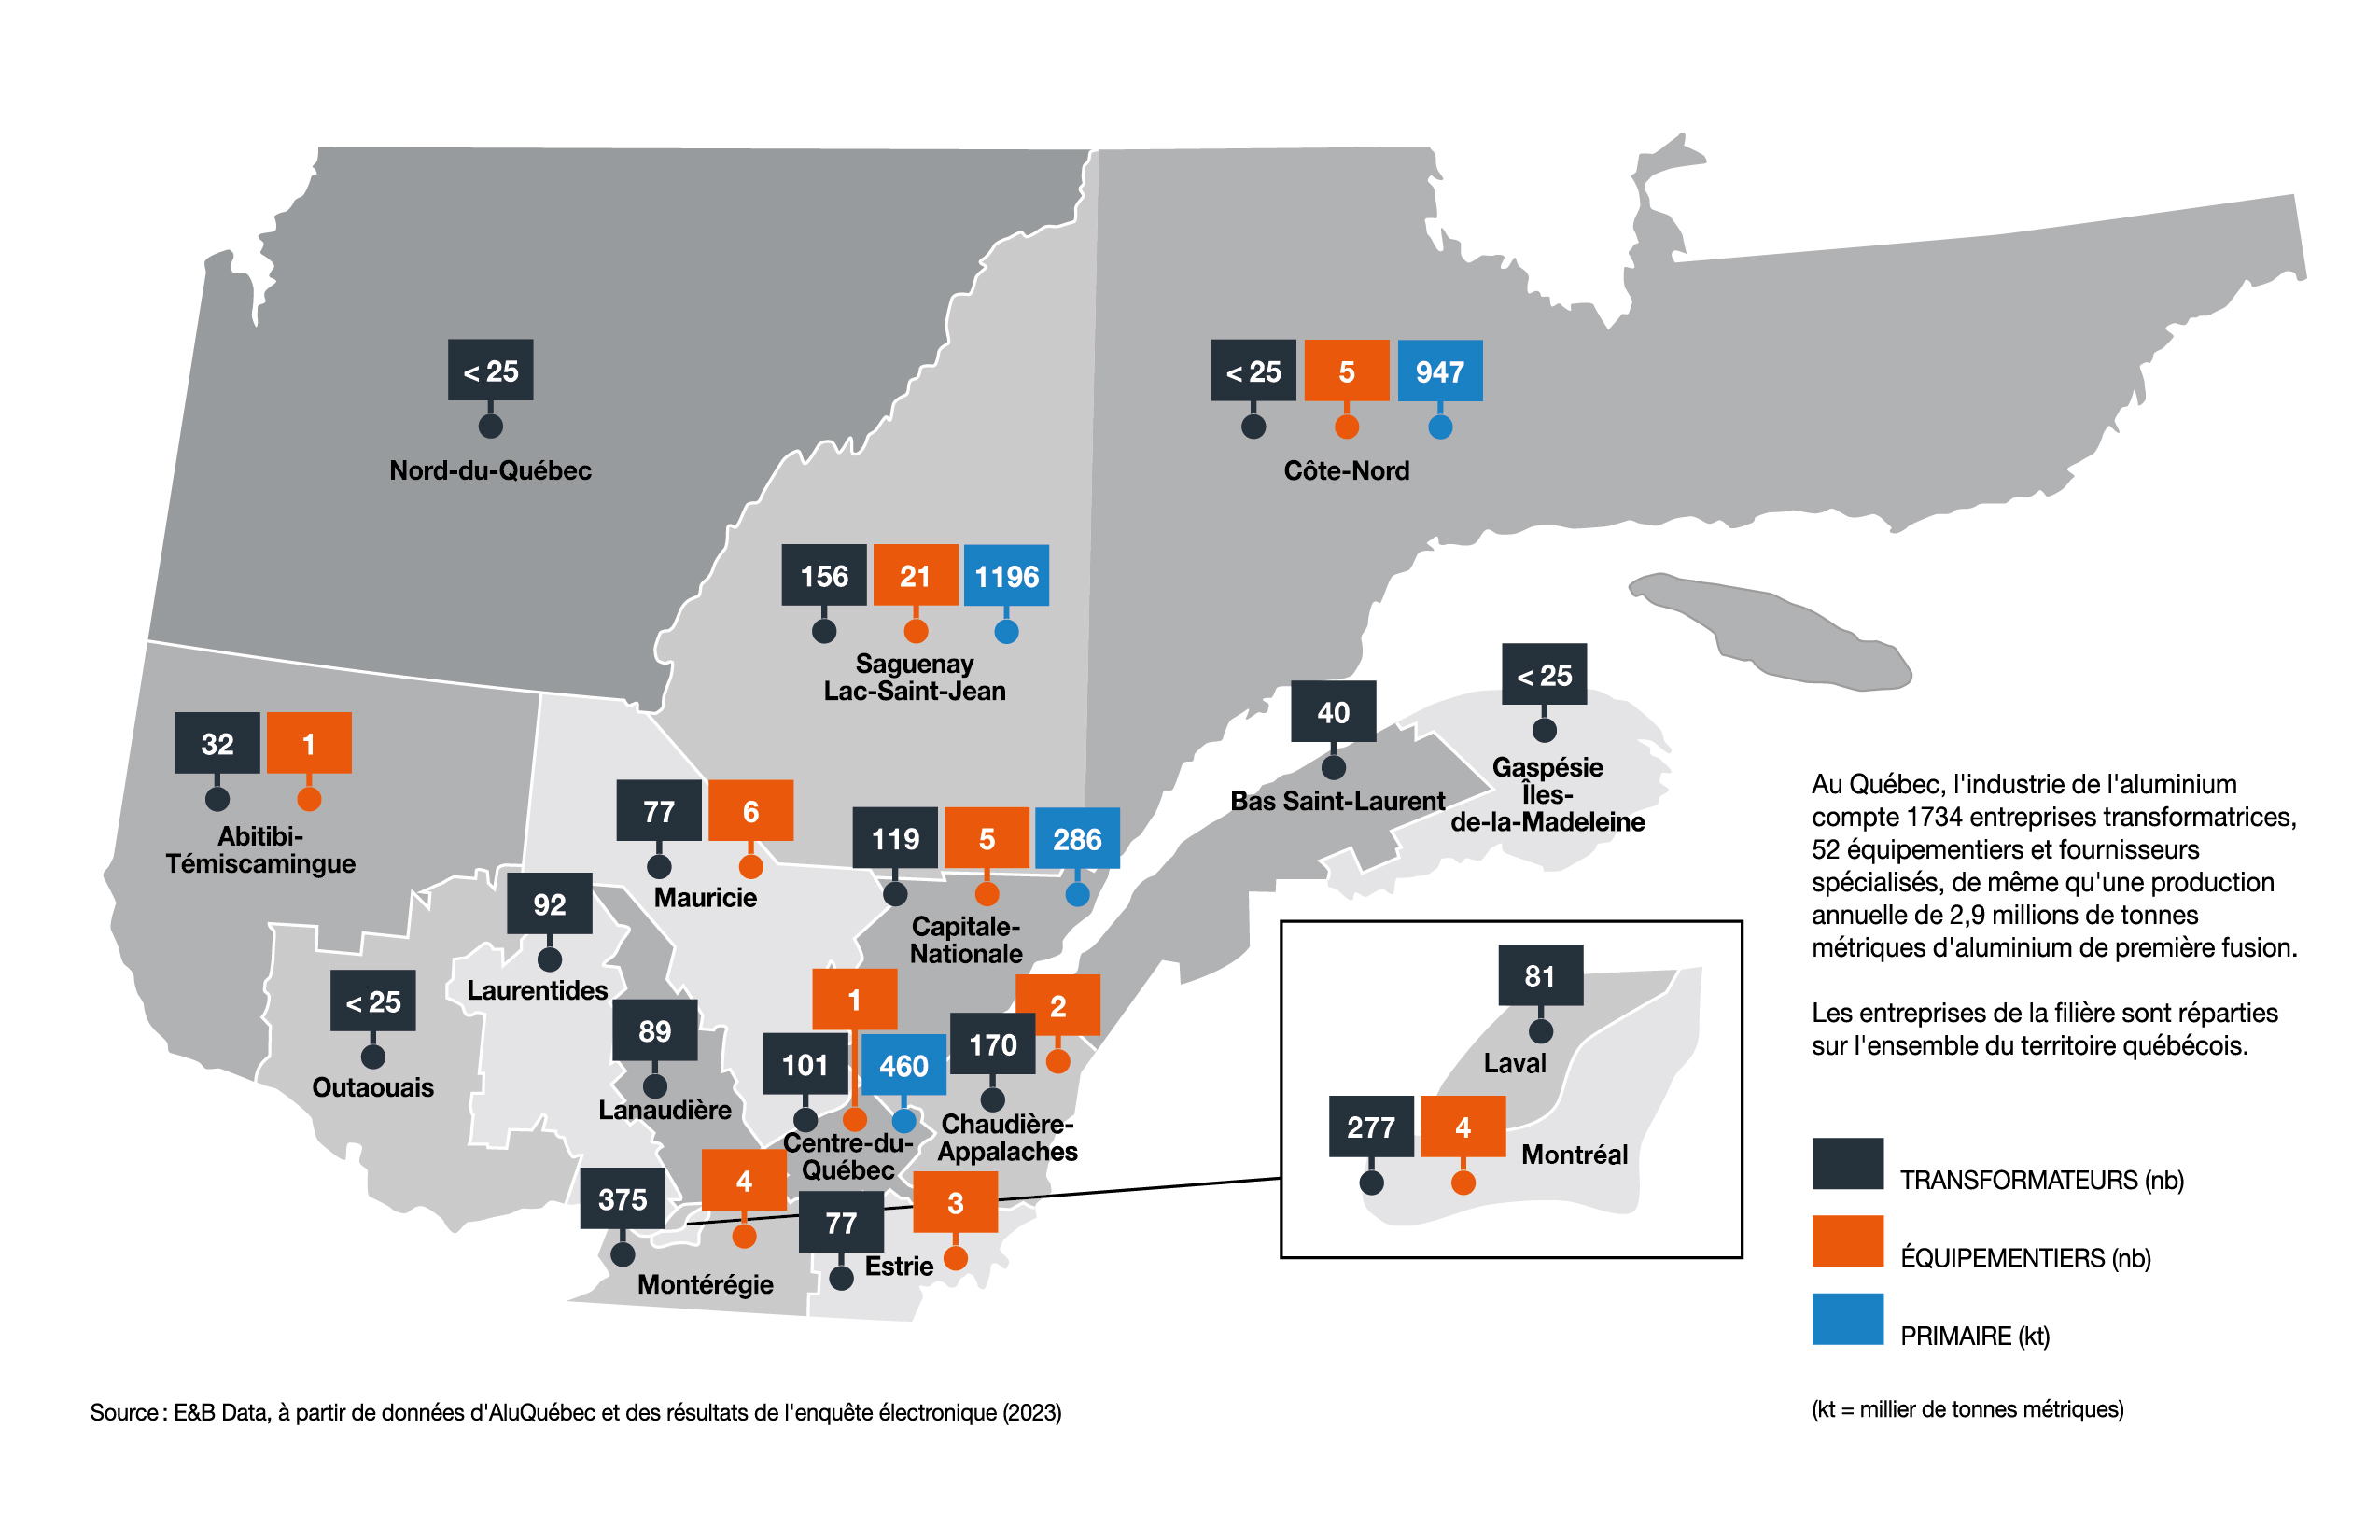 Les entreprises de la grappe de l'aluminium sont présentes partout au Québec - AluQuébec